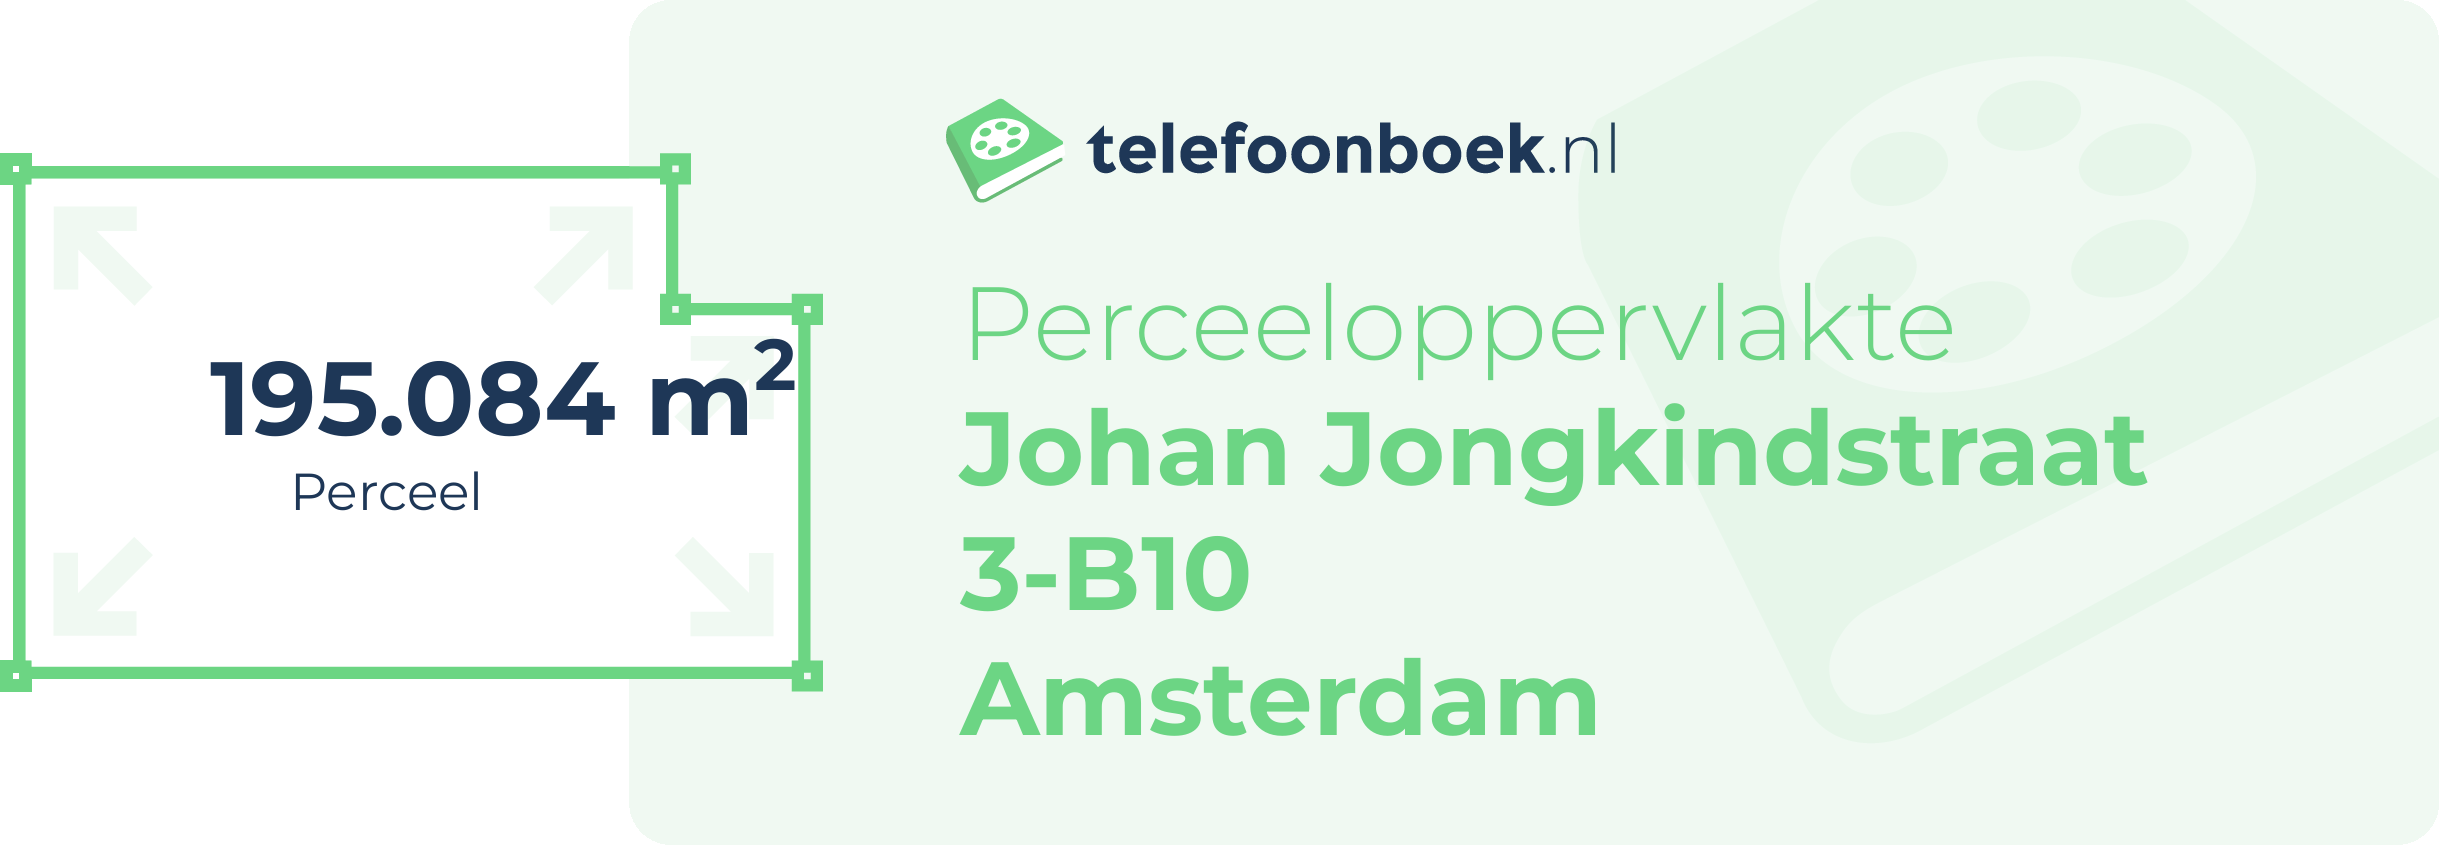 Perceeloppervlakte Johan Jongkindstraat 3-B10 Amsterdam